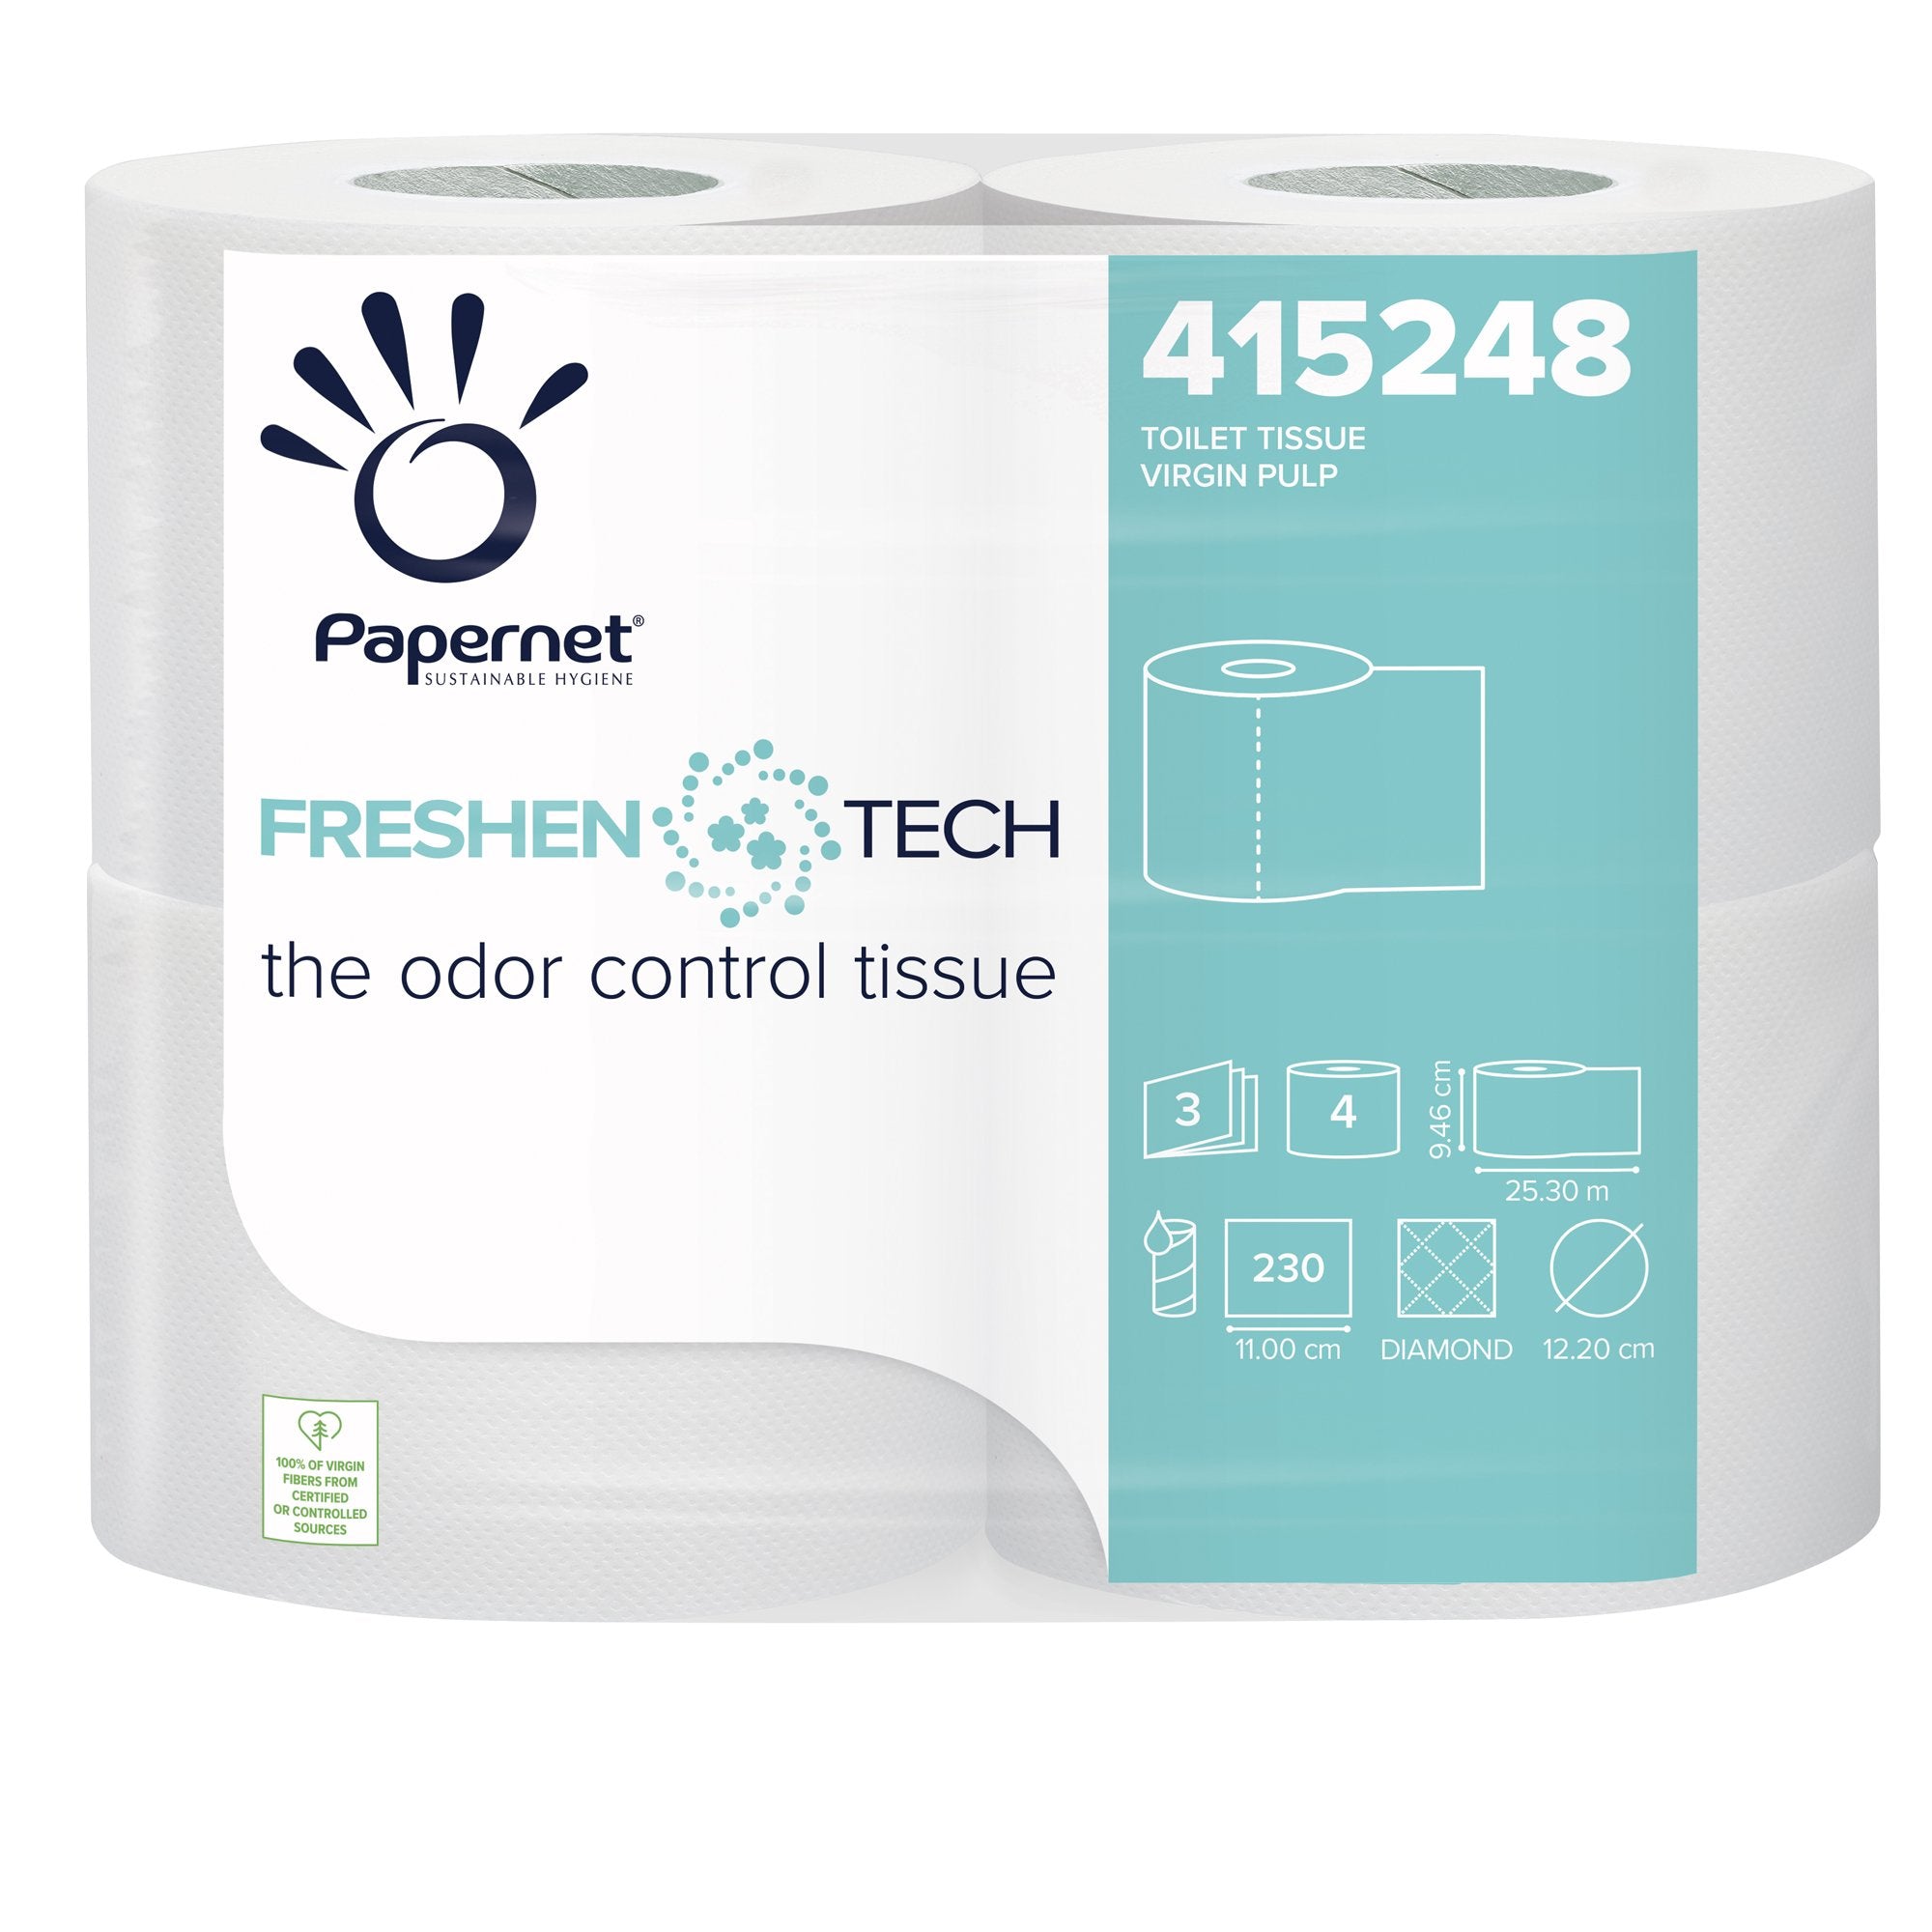 papernet-pacco-4rt-carta-igienica-3-veli-25-3mt-230-strappi-freshen-tech